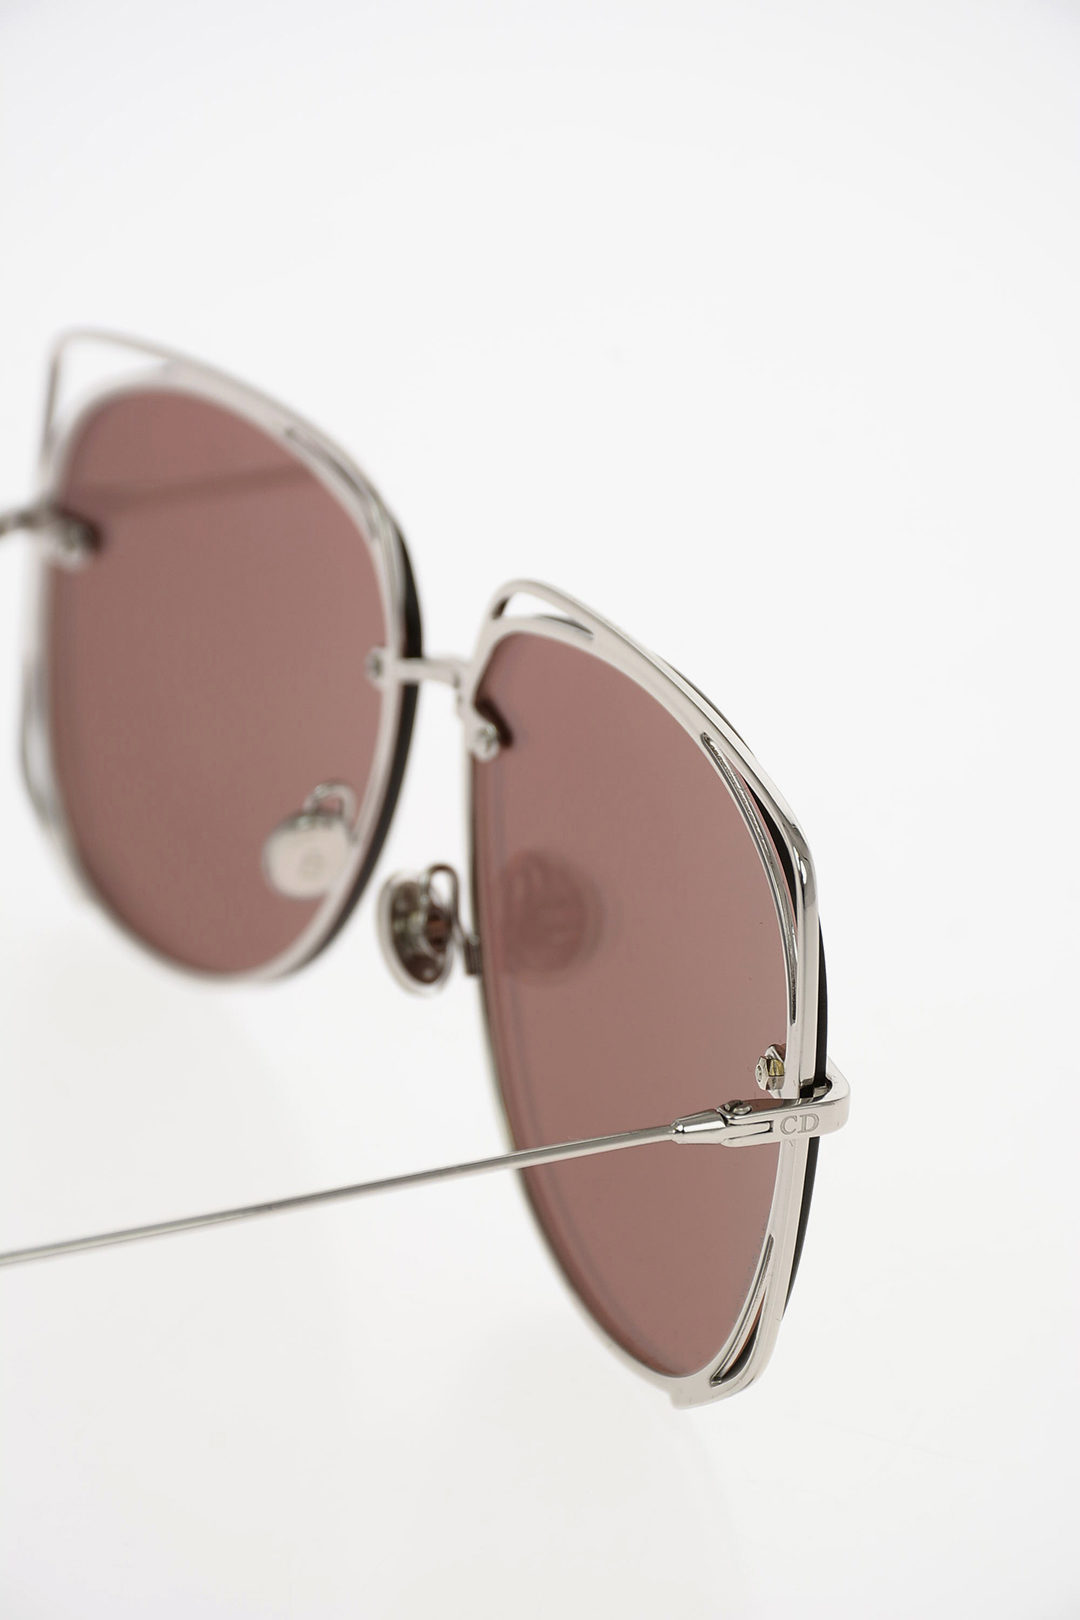 Dior Eyewear Sunglasses for Women  Shop on FARFETCH